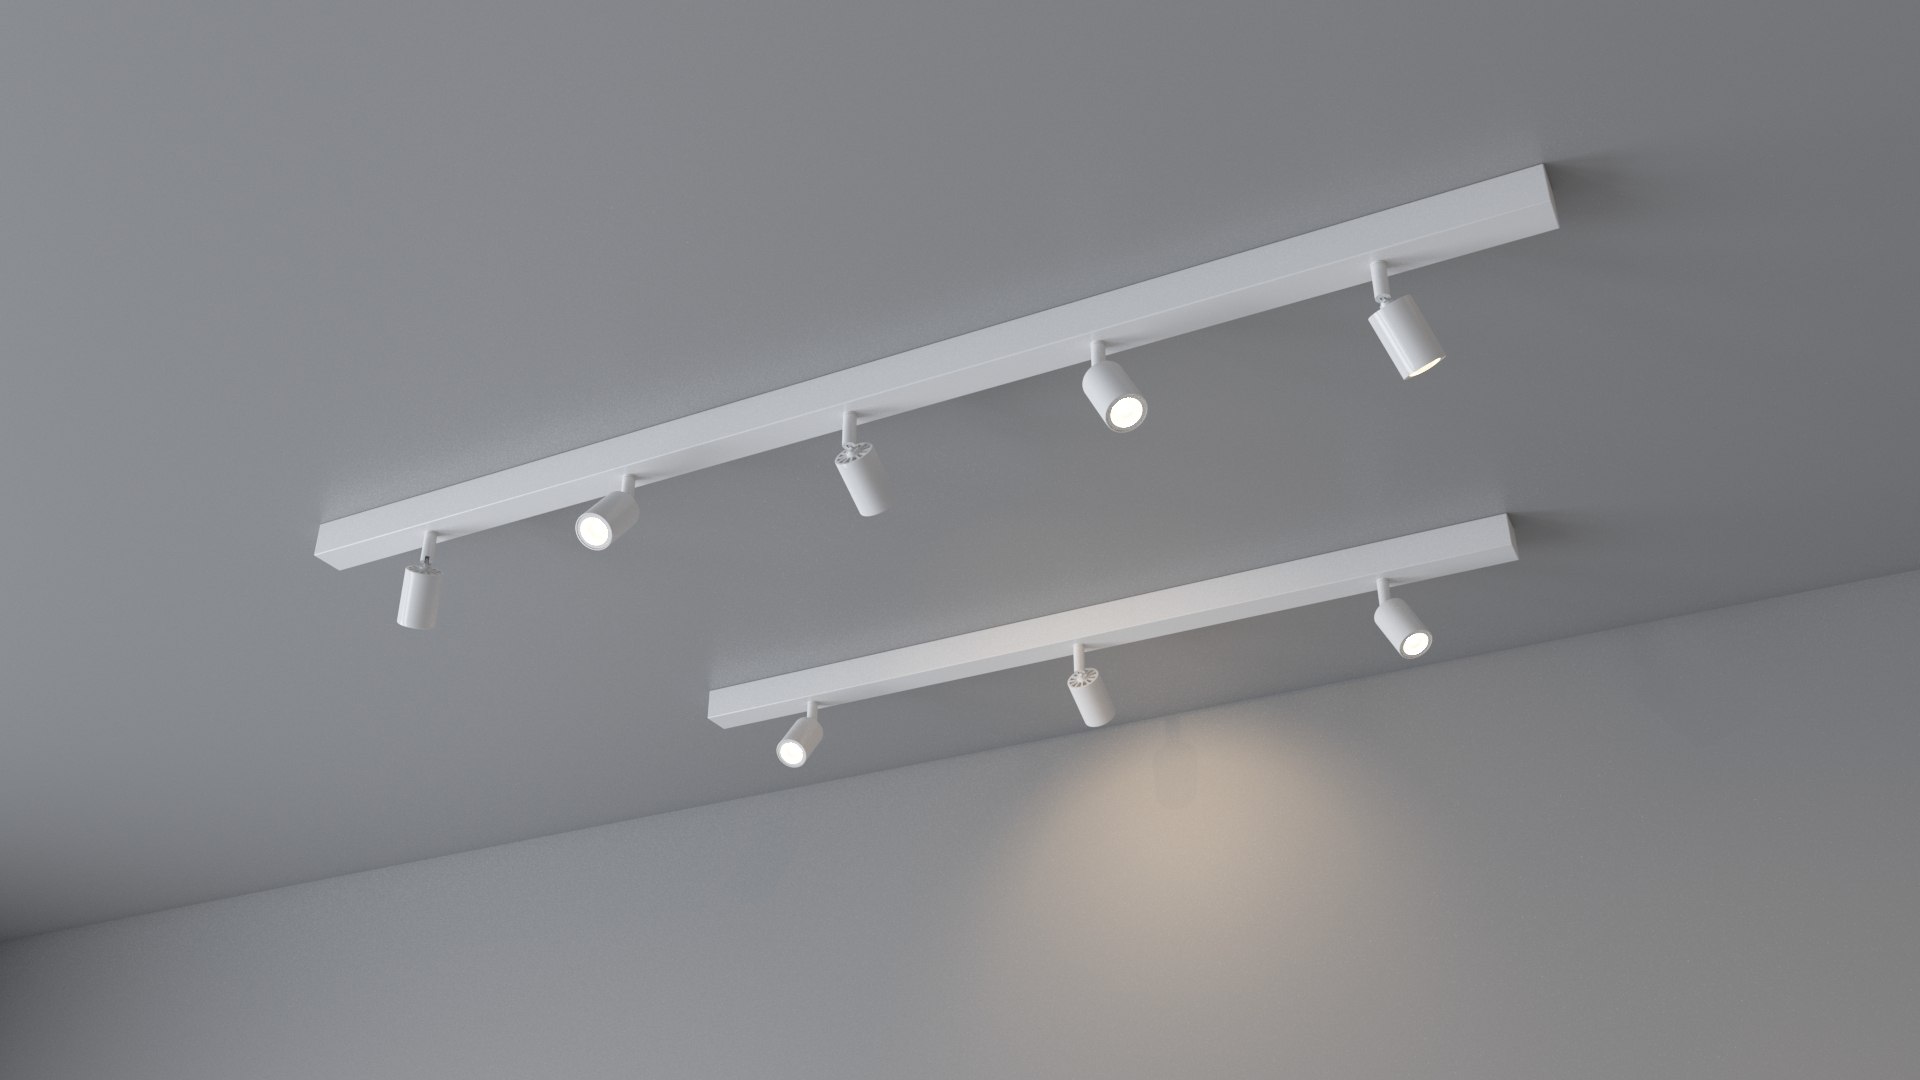 Proficiat Verplicht omvang Ikea bave ceiling lighting 3D - TurboSquid 1480905